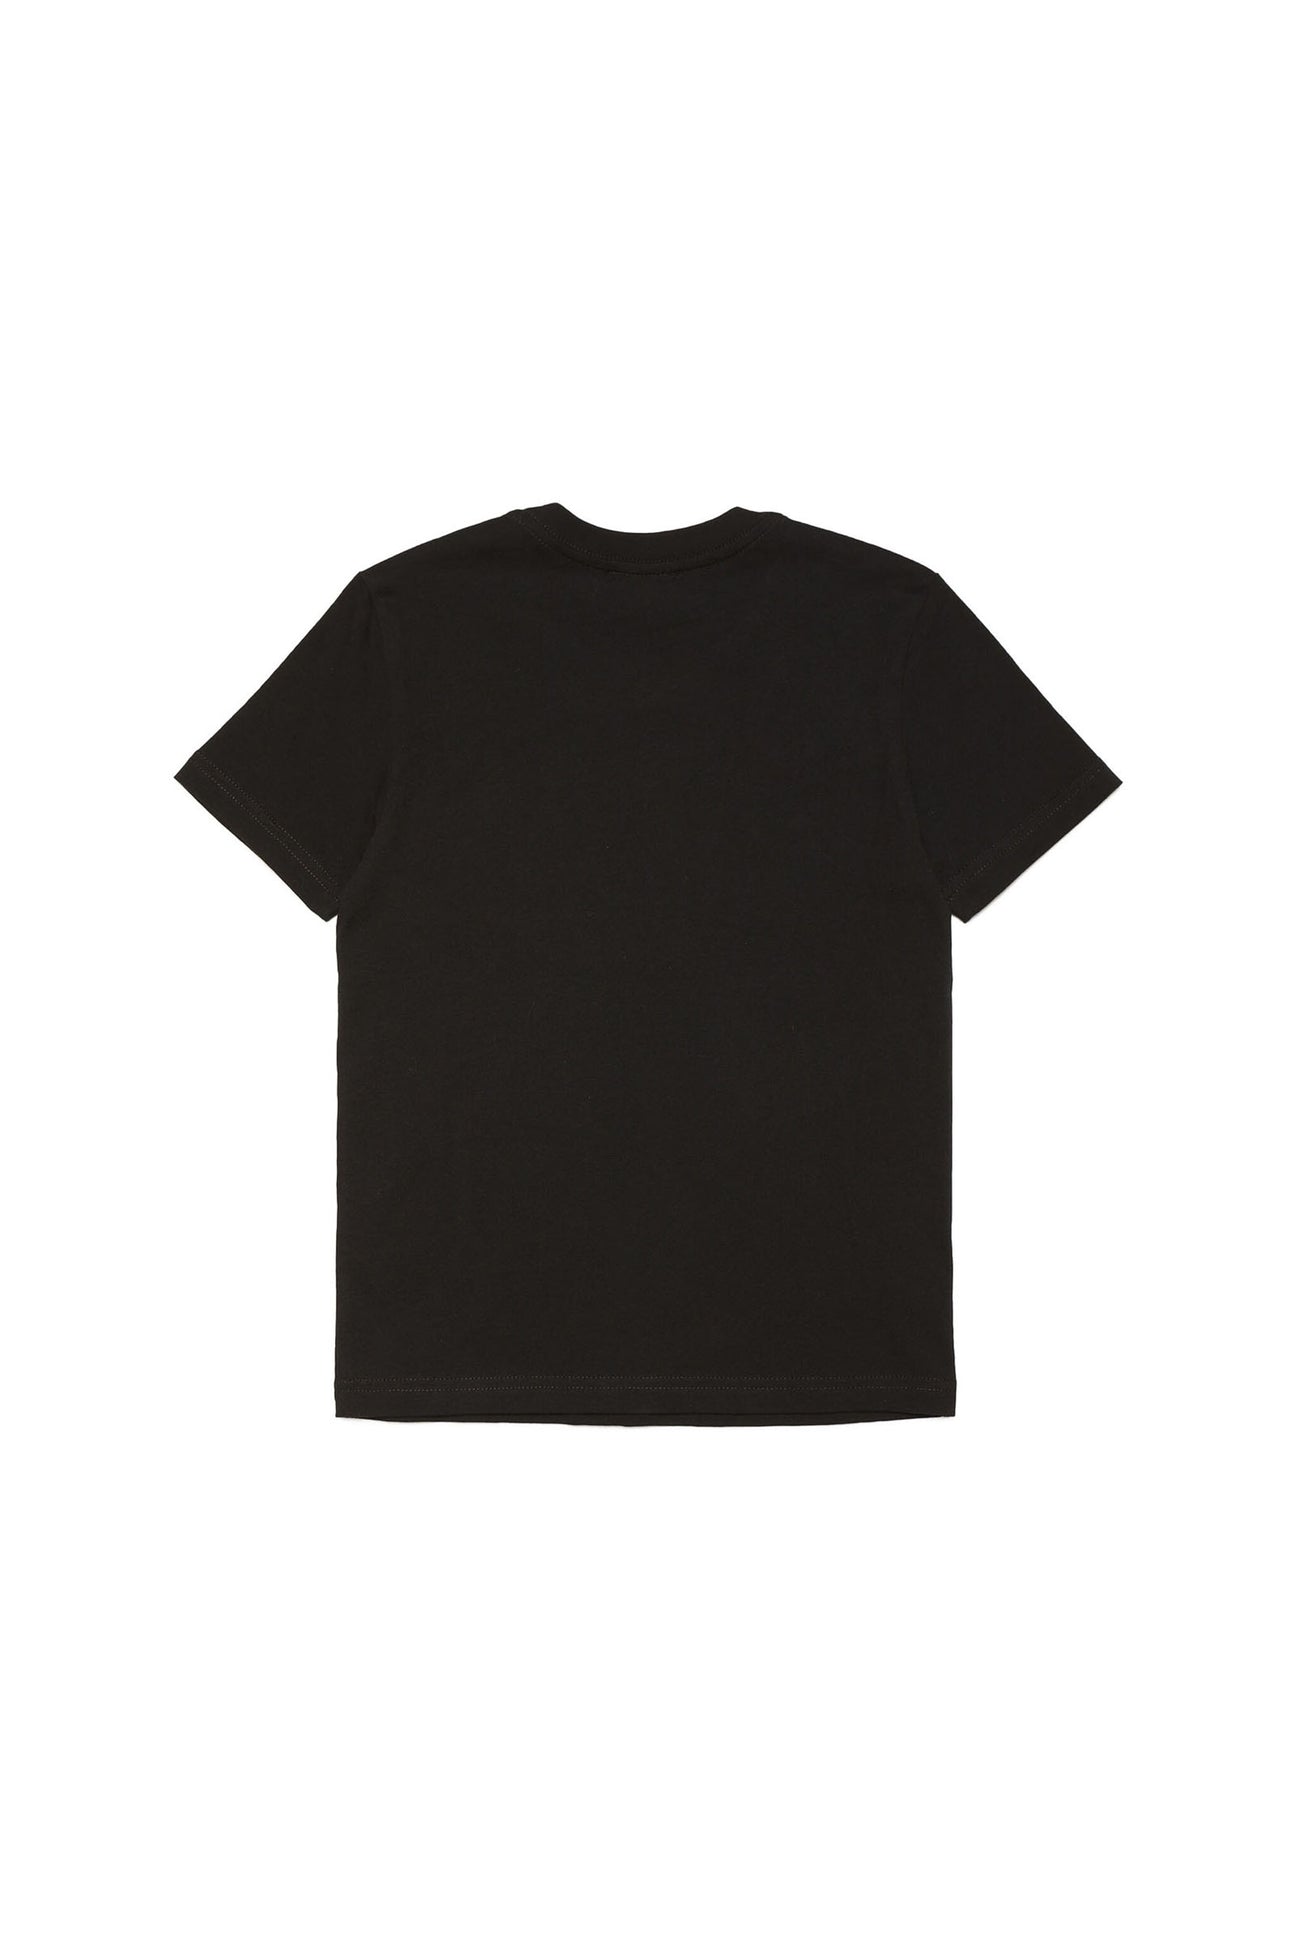 Camiseta negra con estampado Monkey de efecto metálico Camiseta negra con estampado Monkey de efecto metálico